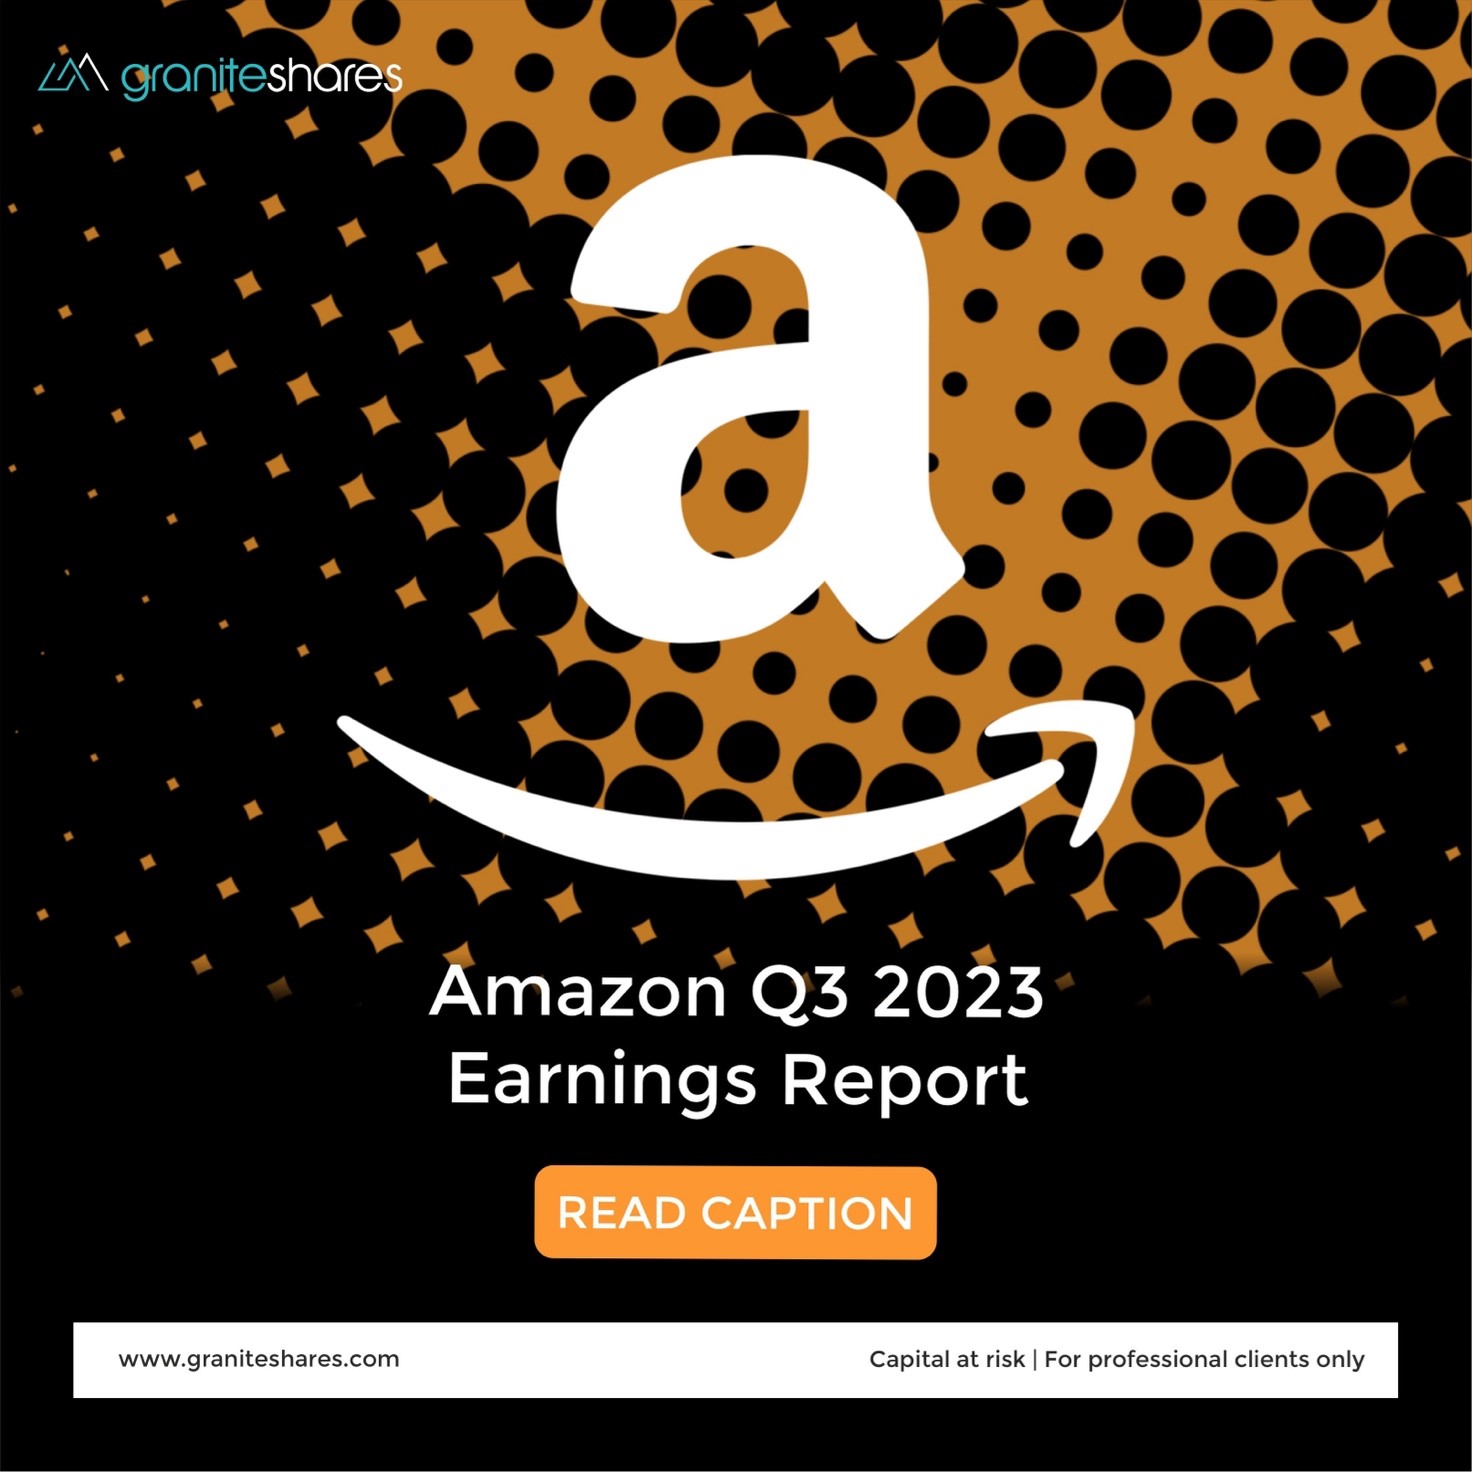 Amazon Earnings Q3 2023